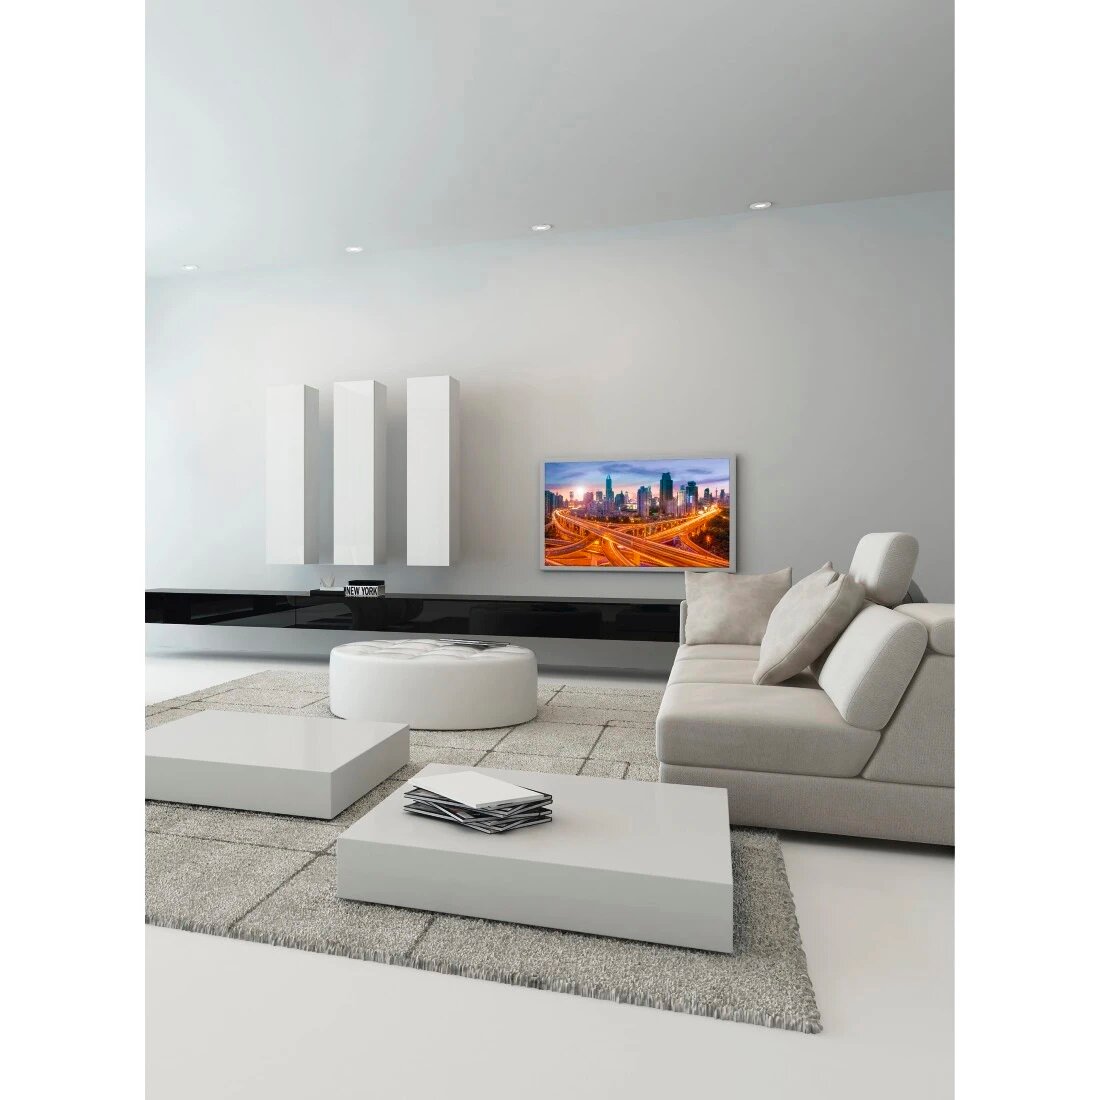 Uchwyt do telewizora Hama Vesa 400x400 Premium Motion LCD 65” telewizor zamontowany za pomocą uchwytu na ścianie